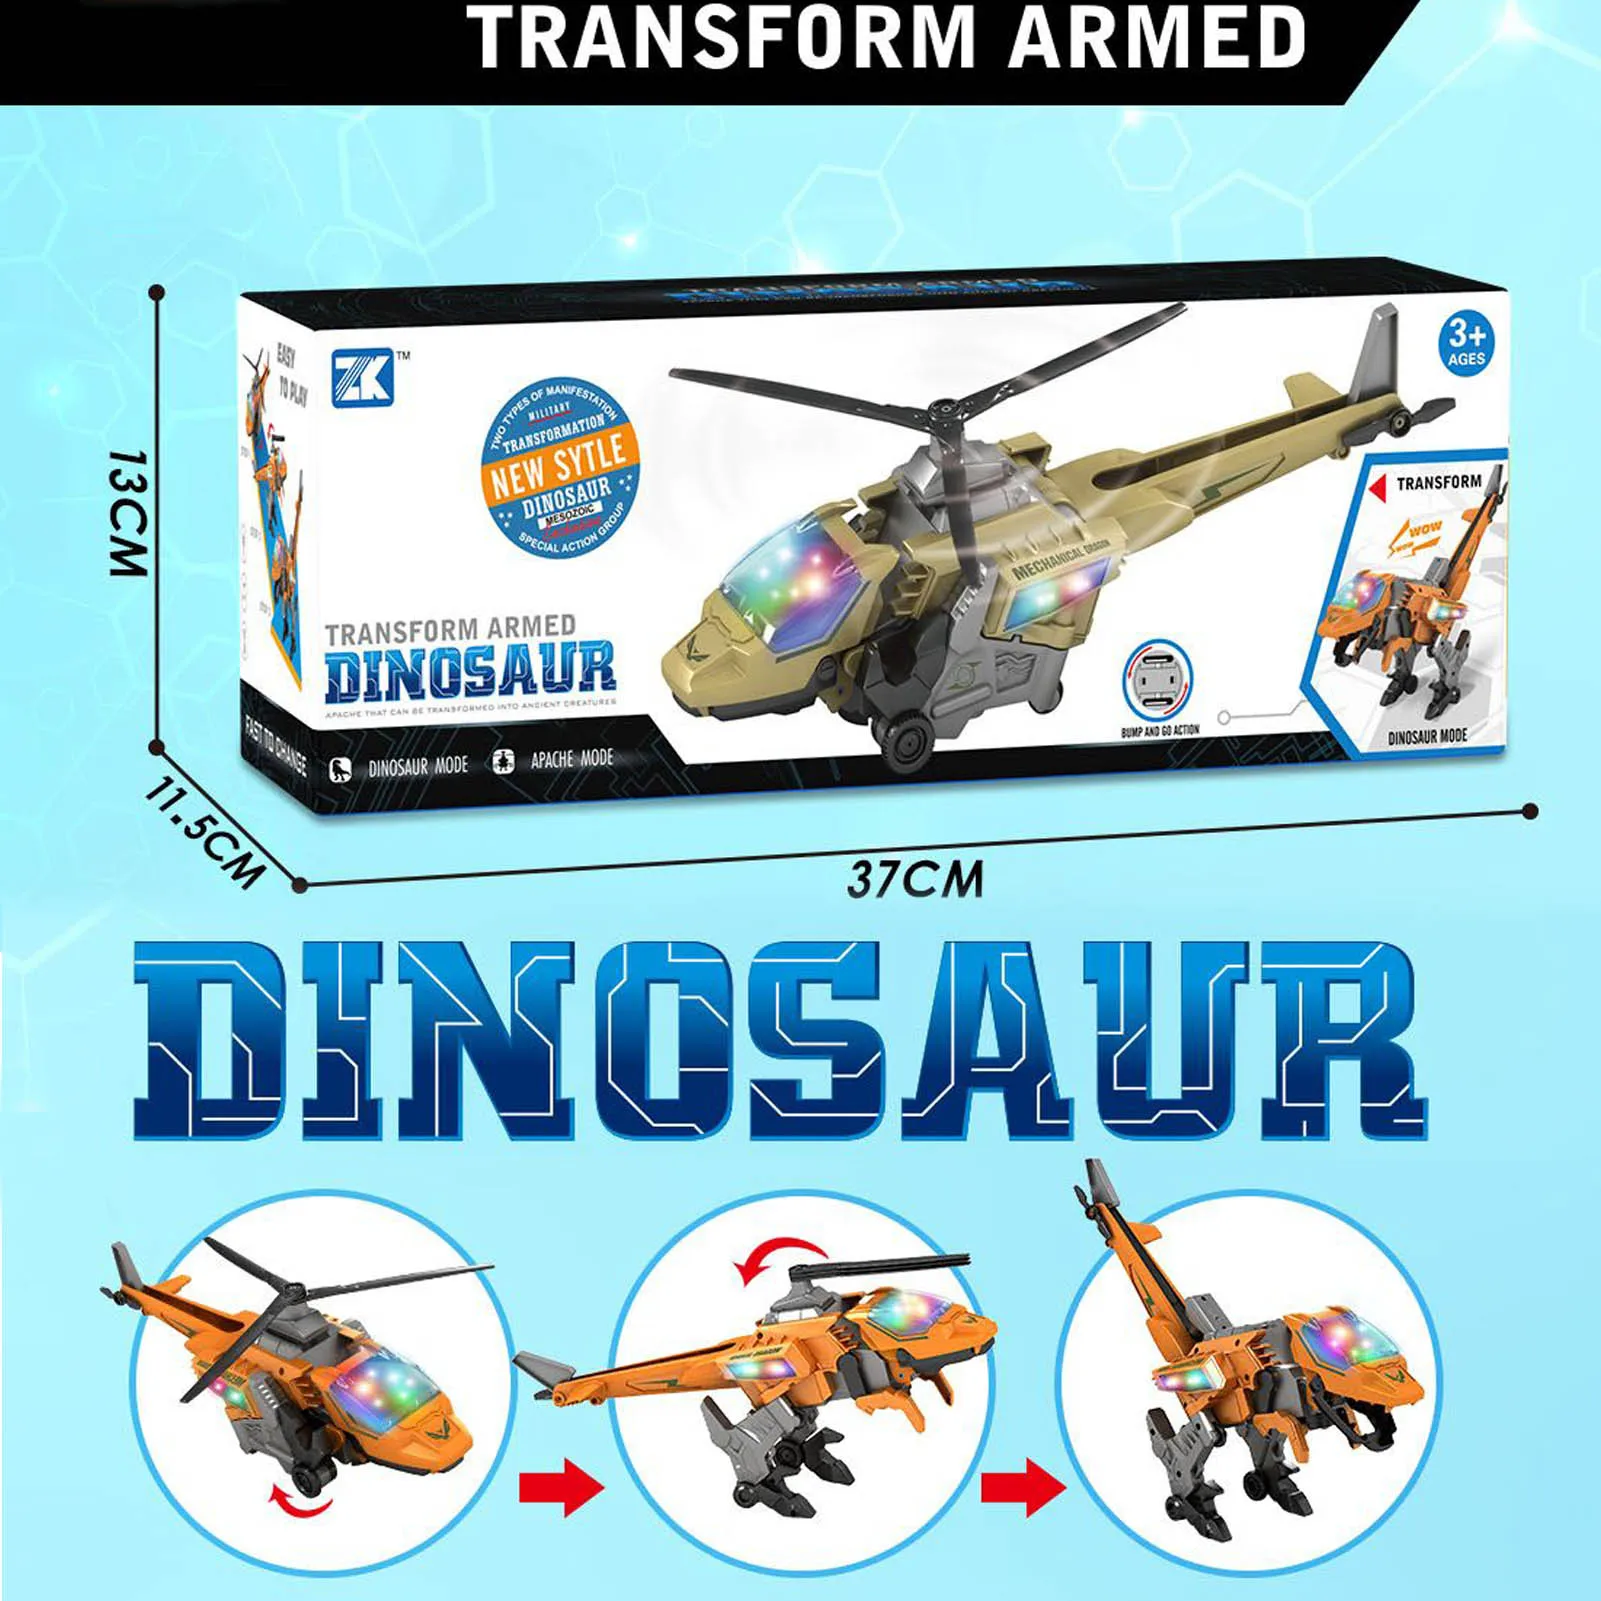 

Трансформирующие игрушки-Динозавры со светодиодсветильник кой, музыка, 2 режима, Электрический динозавр, игрушечный автомобиль, трансформи...